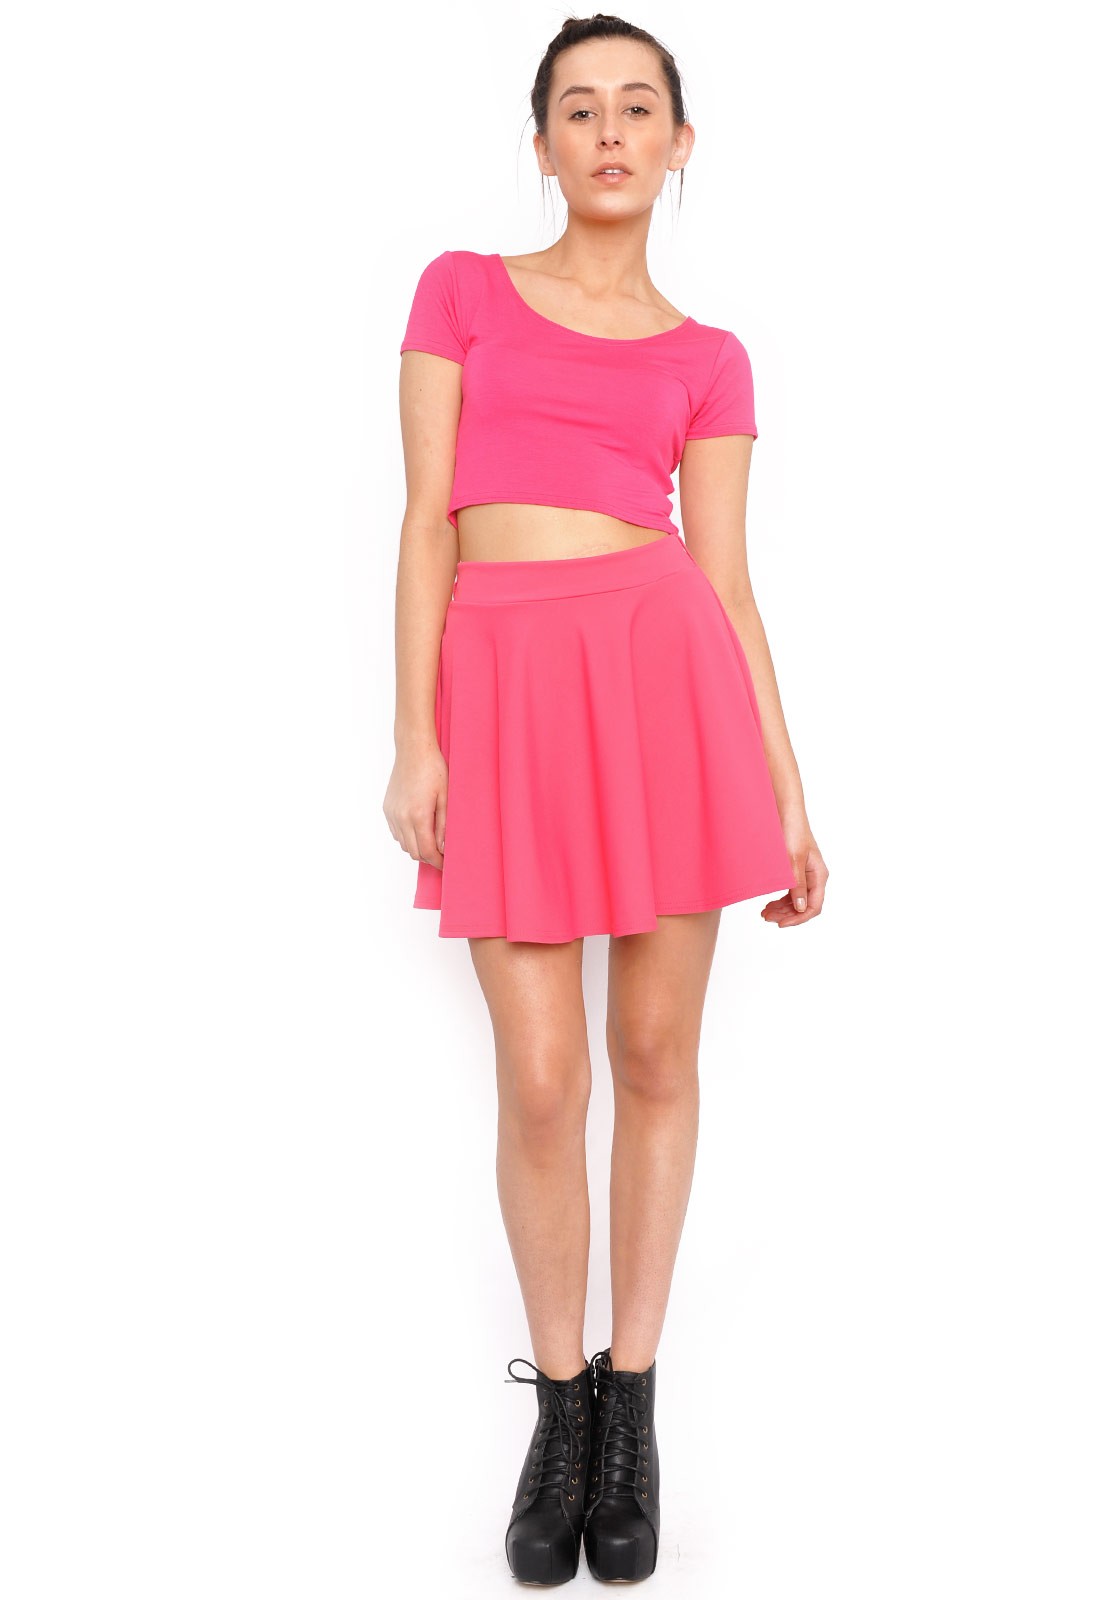 Lauren Skater Mini Skirt in Pink | iCLOTHING